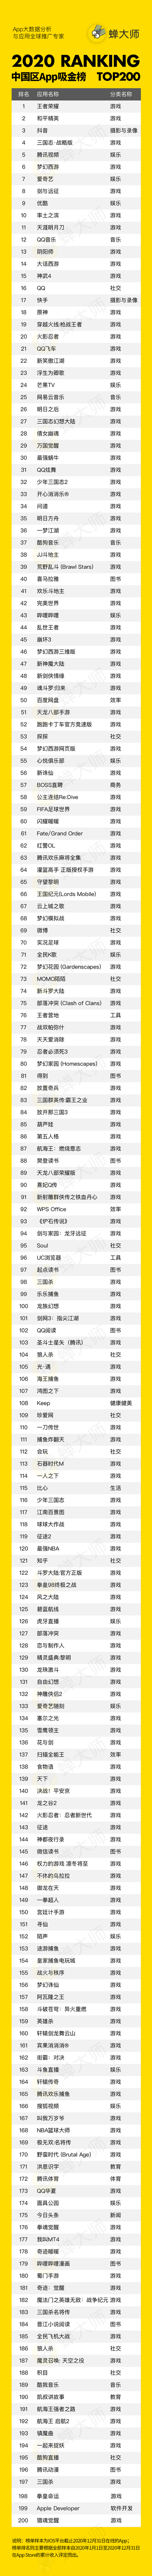 1 蝉大师2020年度榜单-中国区App吸金排行Top200-2.png